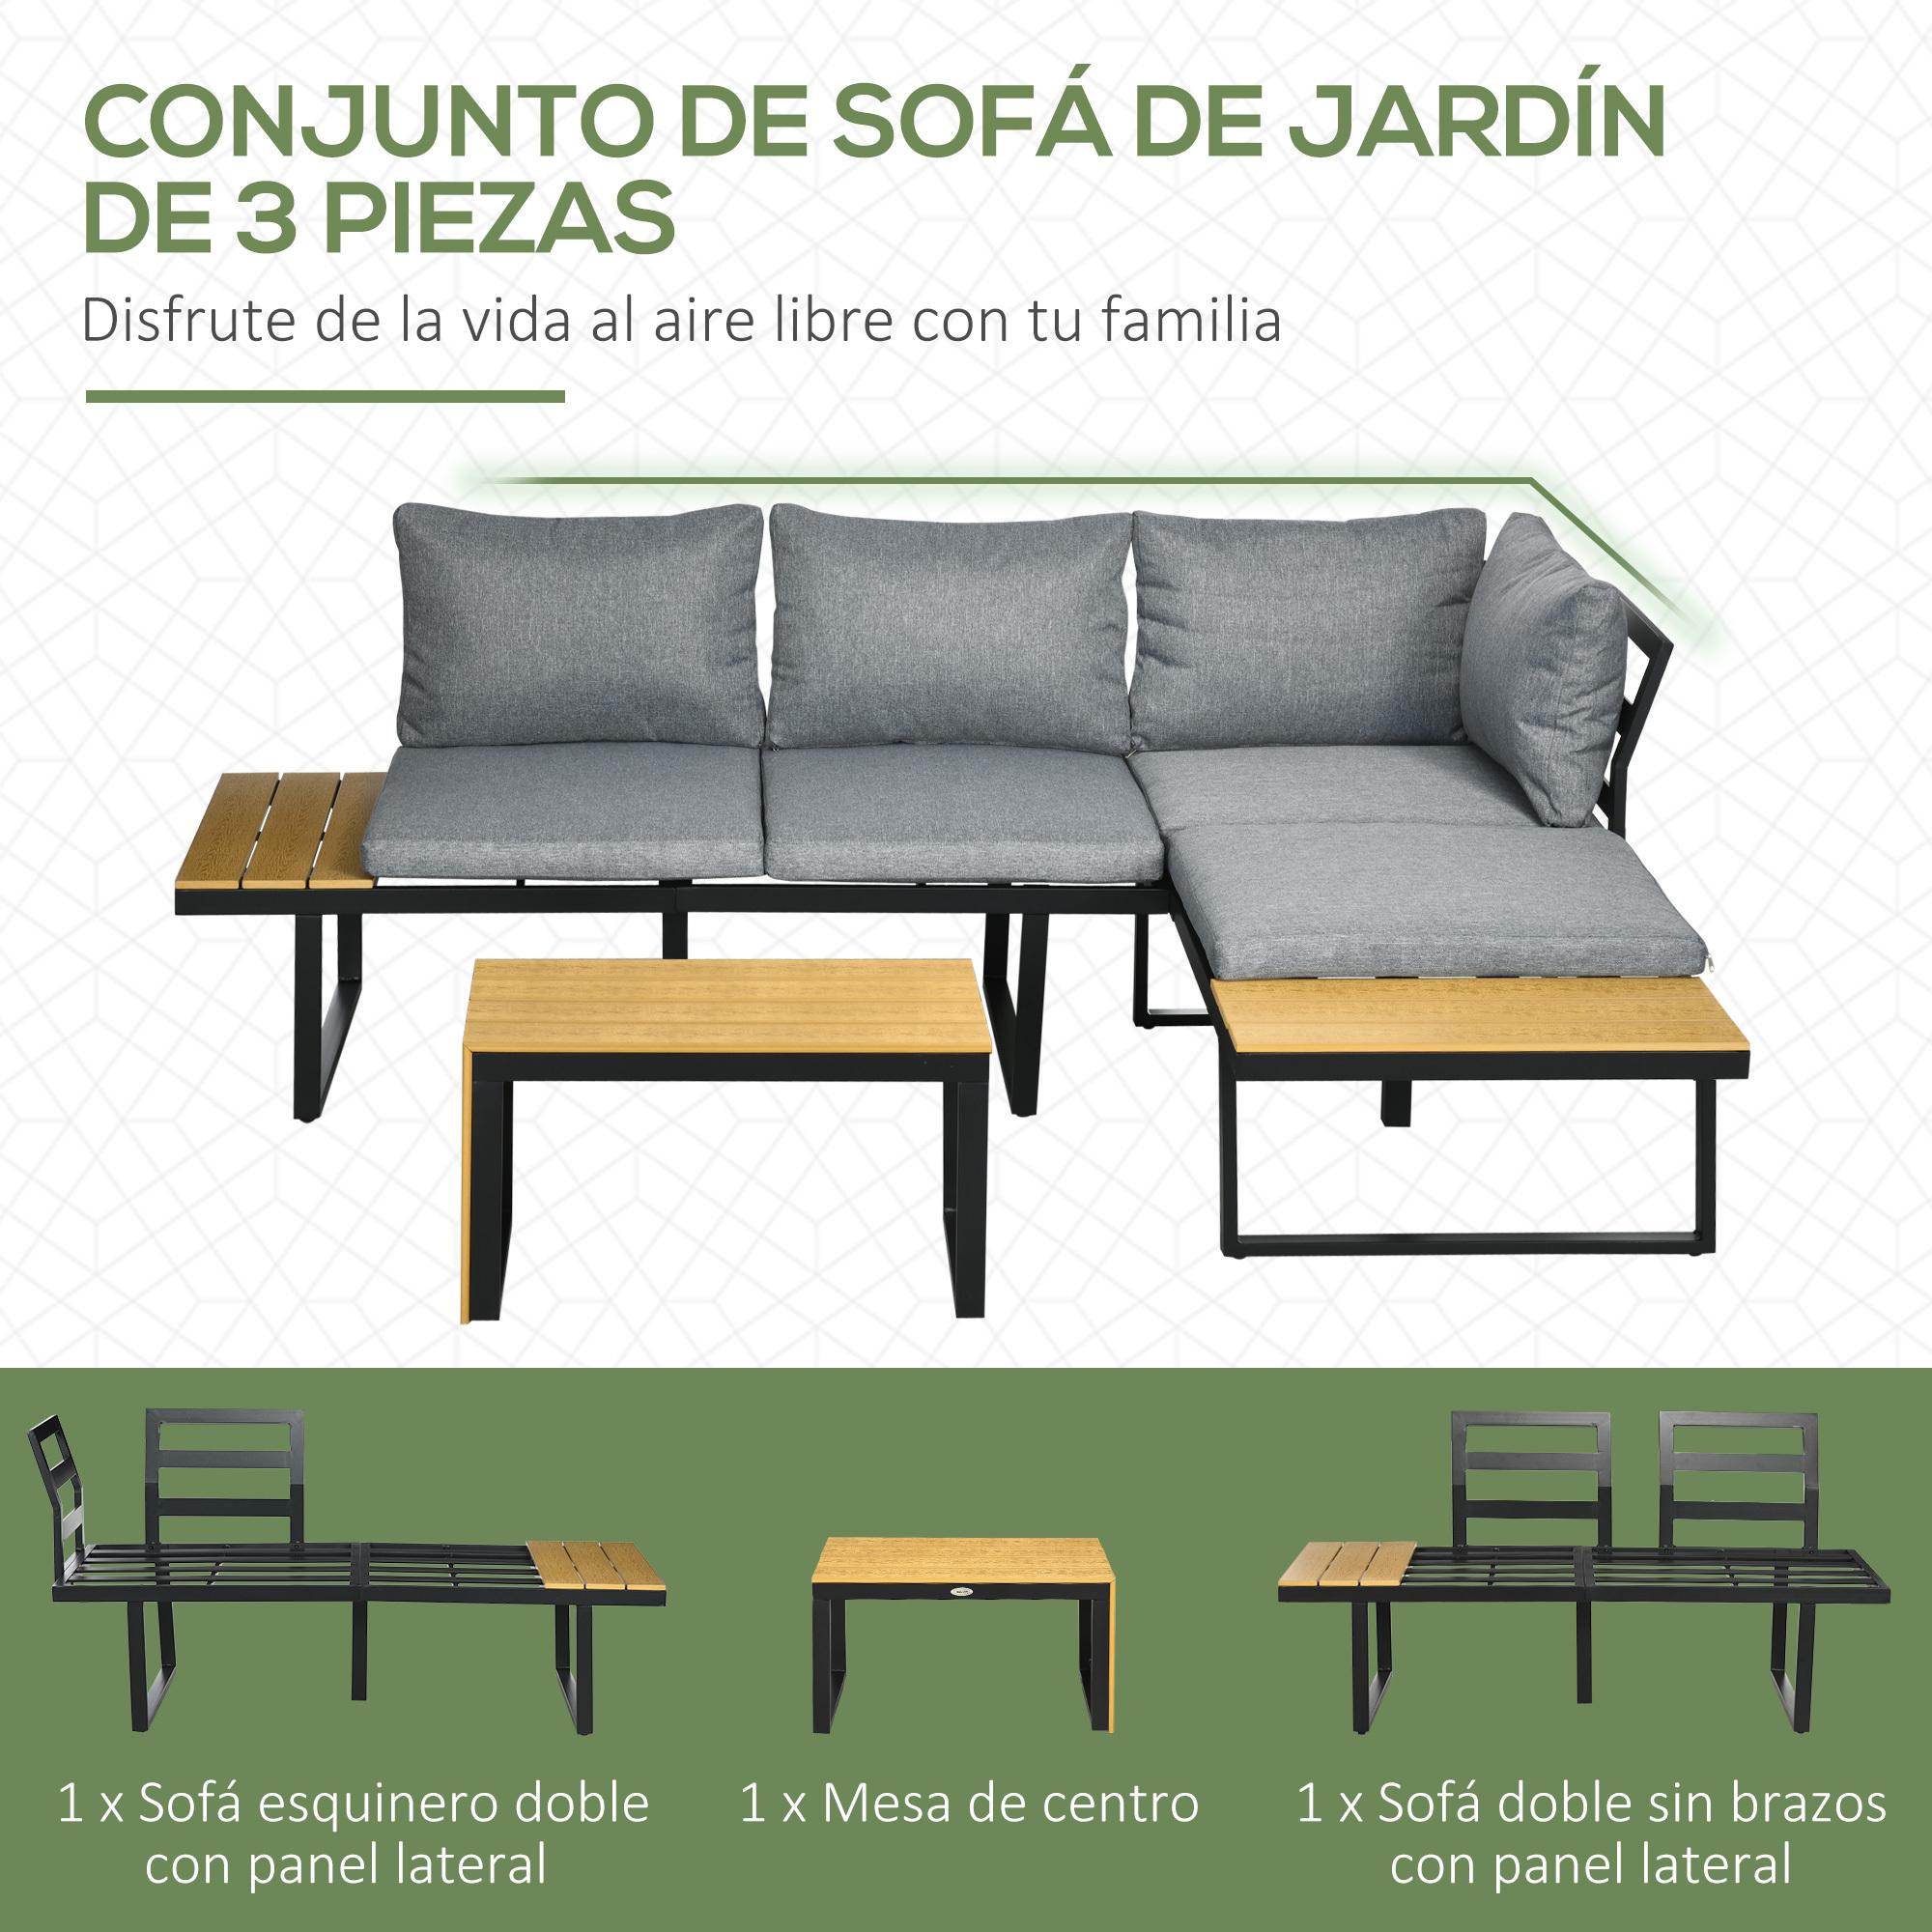 Conjunto de Muebles de Jardín de Aluminio 3 Piezas Juego de Conversación Incluye 2 Sofás Esquineros con Cojines Mesa de Plástico Madera Gris